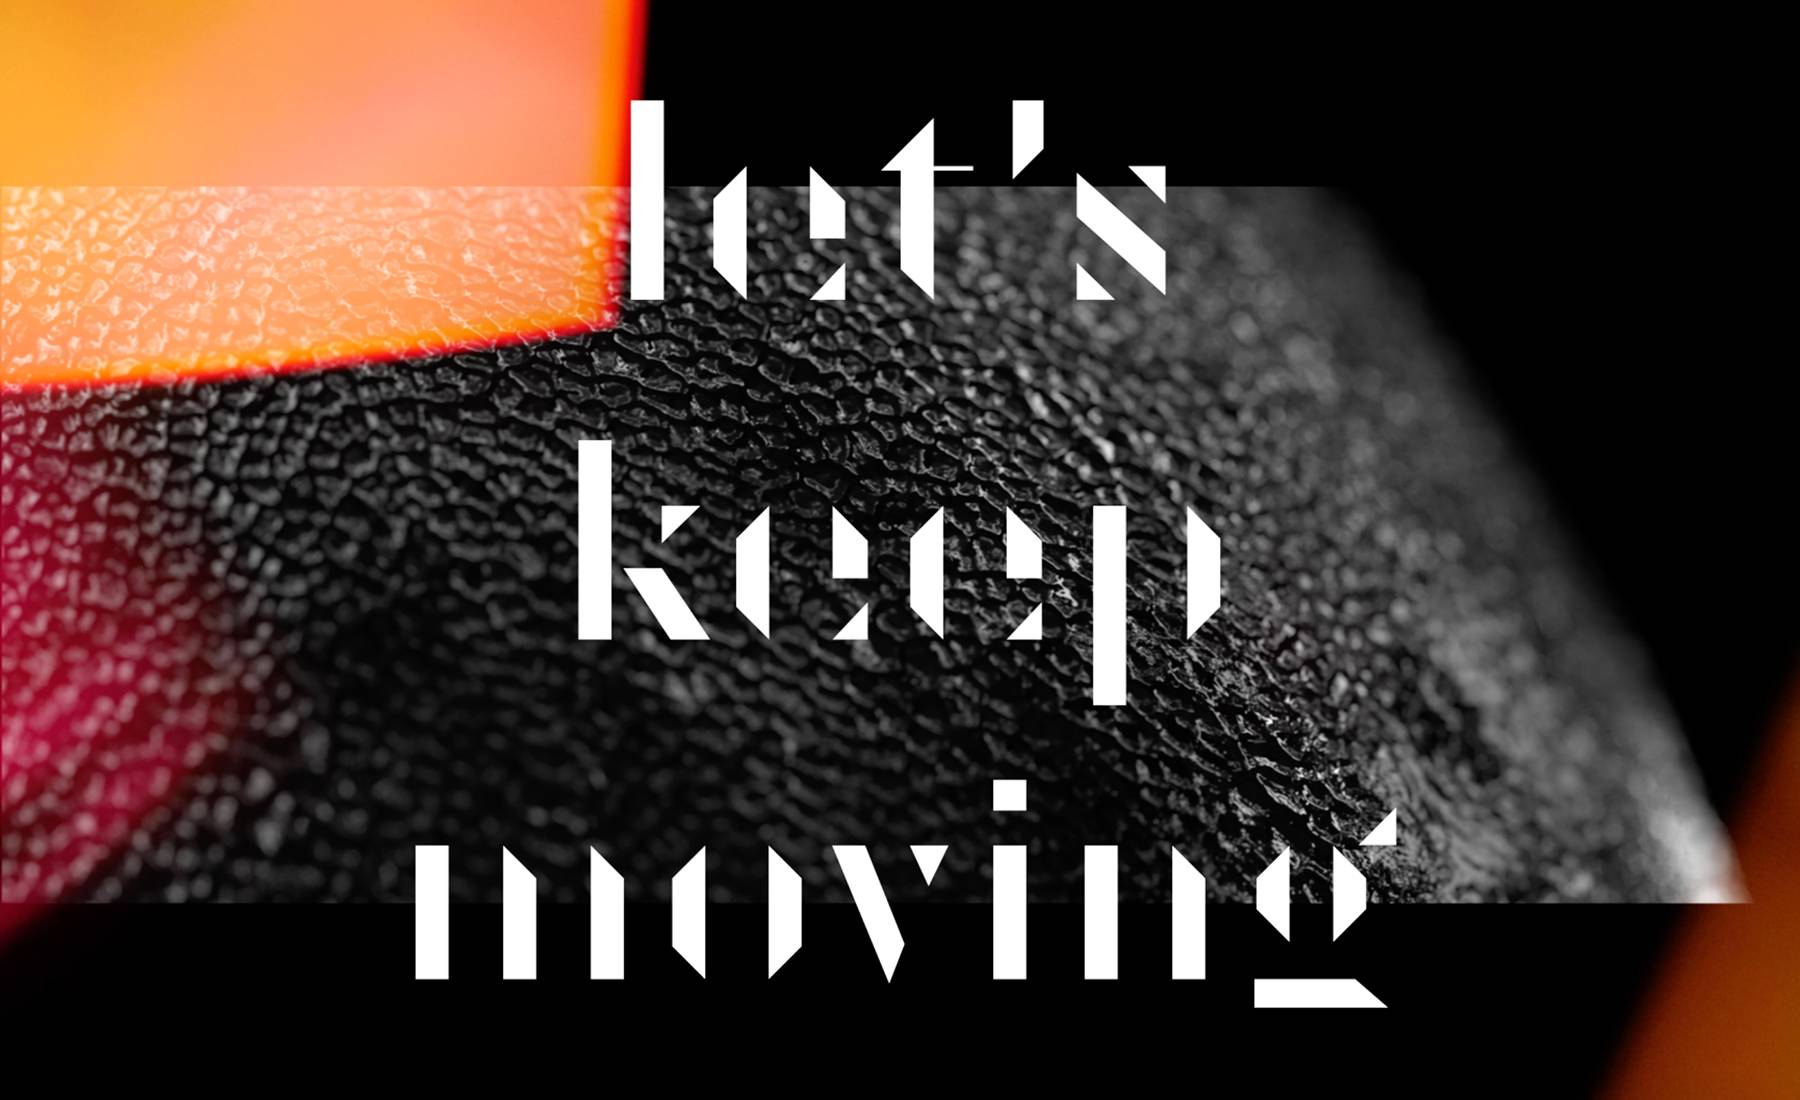 Emie keep on moving. Keep moving forward. Keep on moving kastuvas feat. Emie.